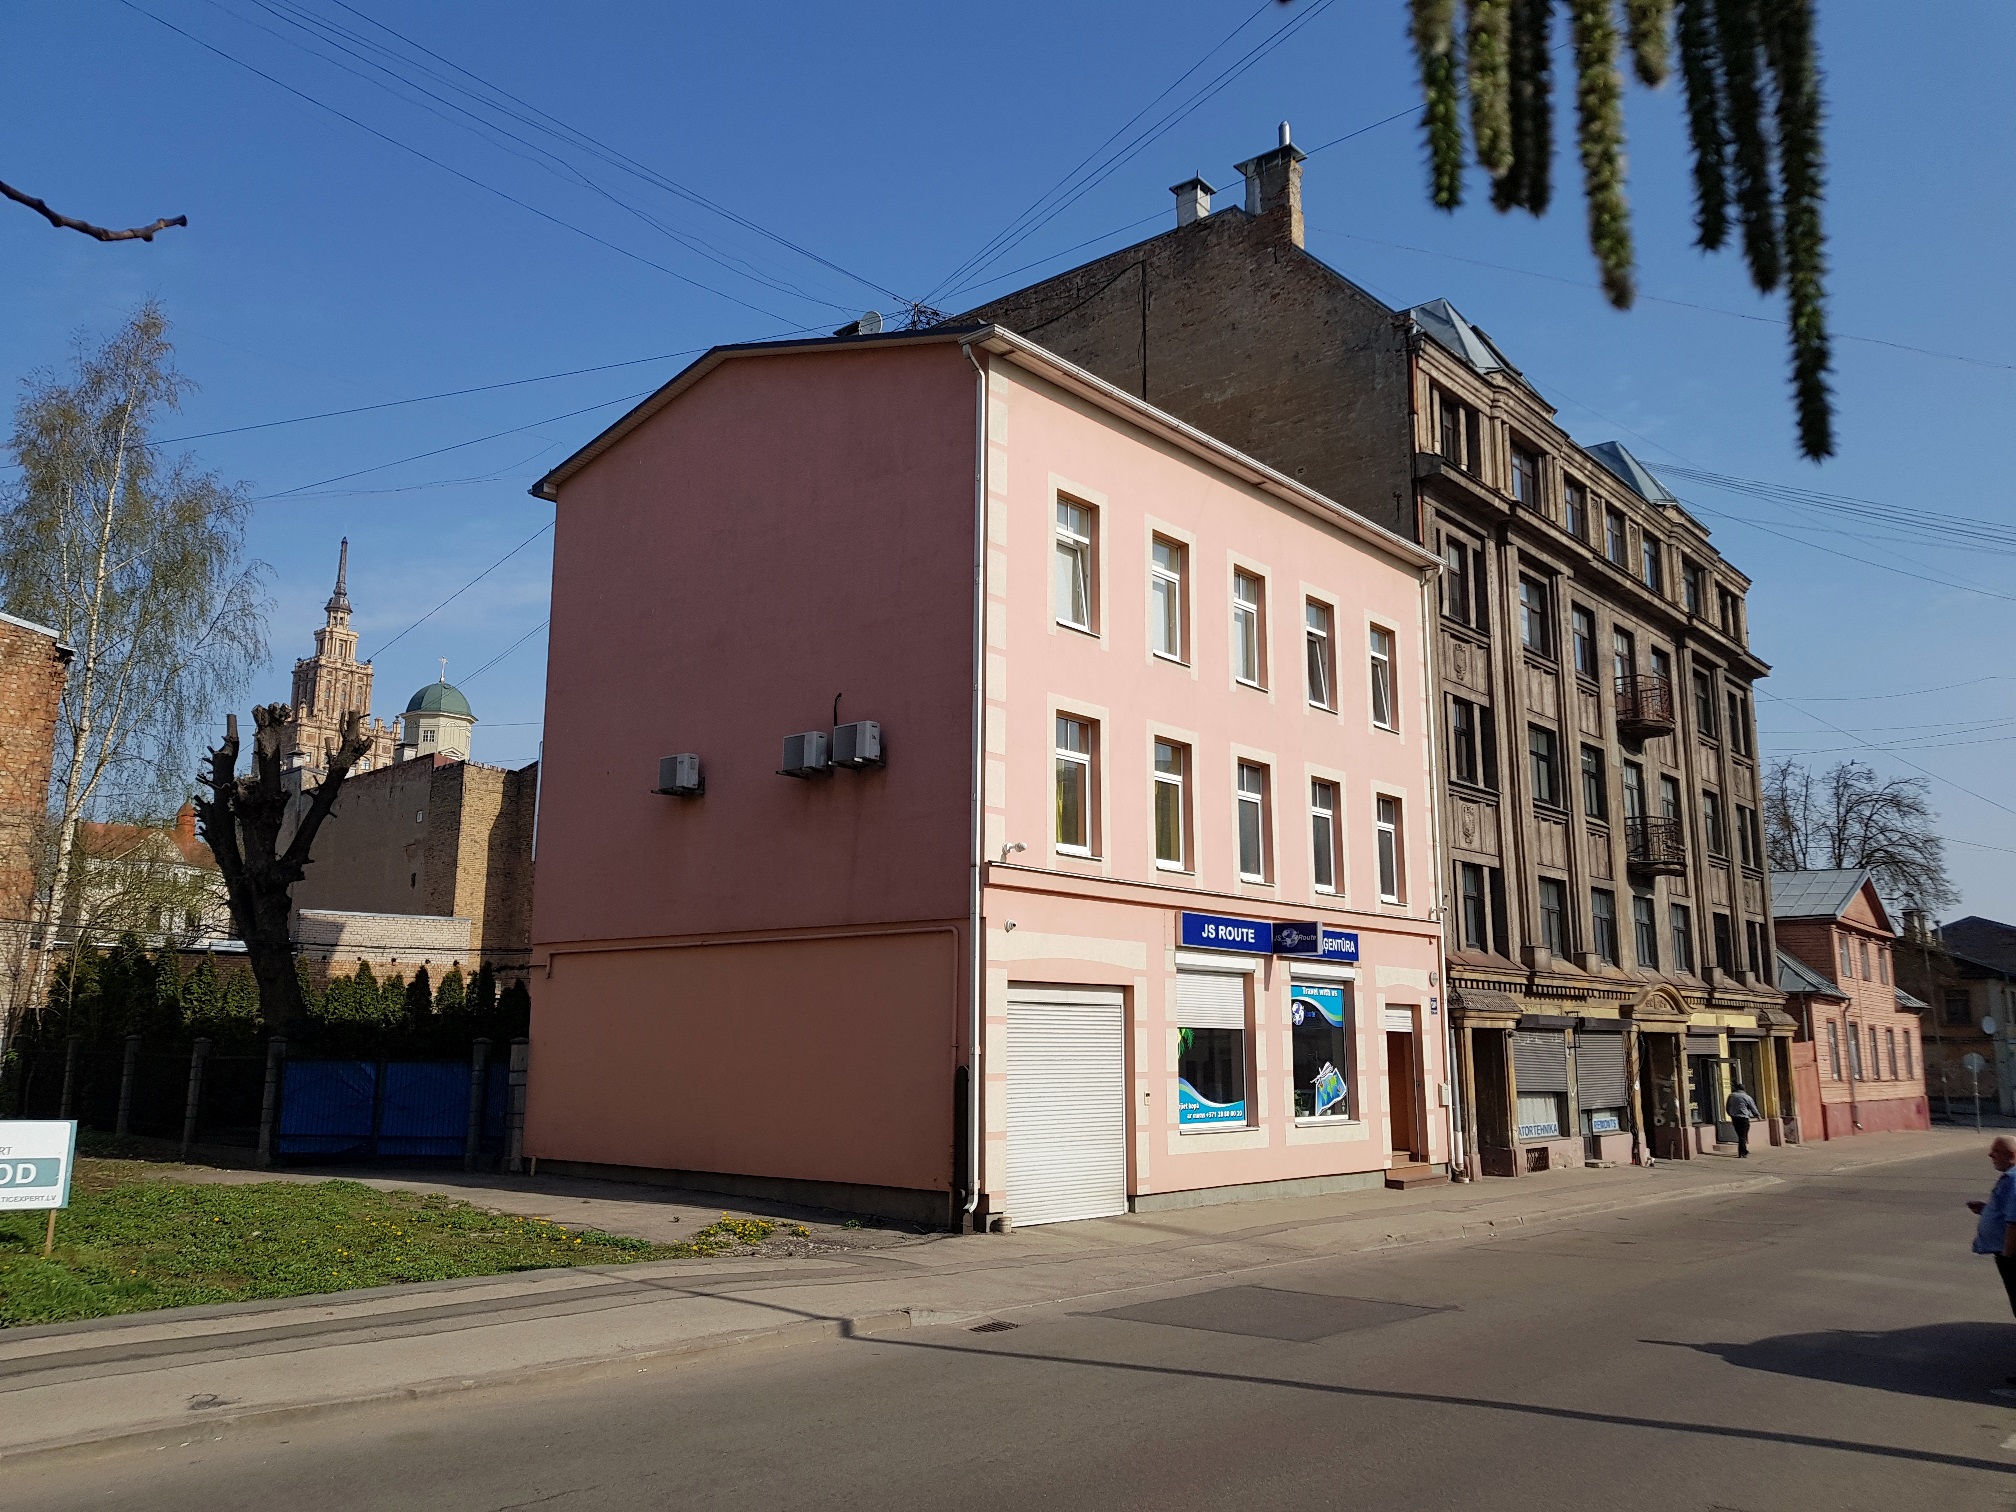 Сдают квартиру, улица Dzirnavu 134a - Изображение 1